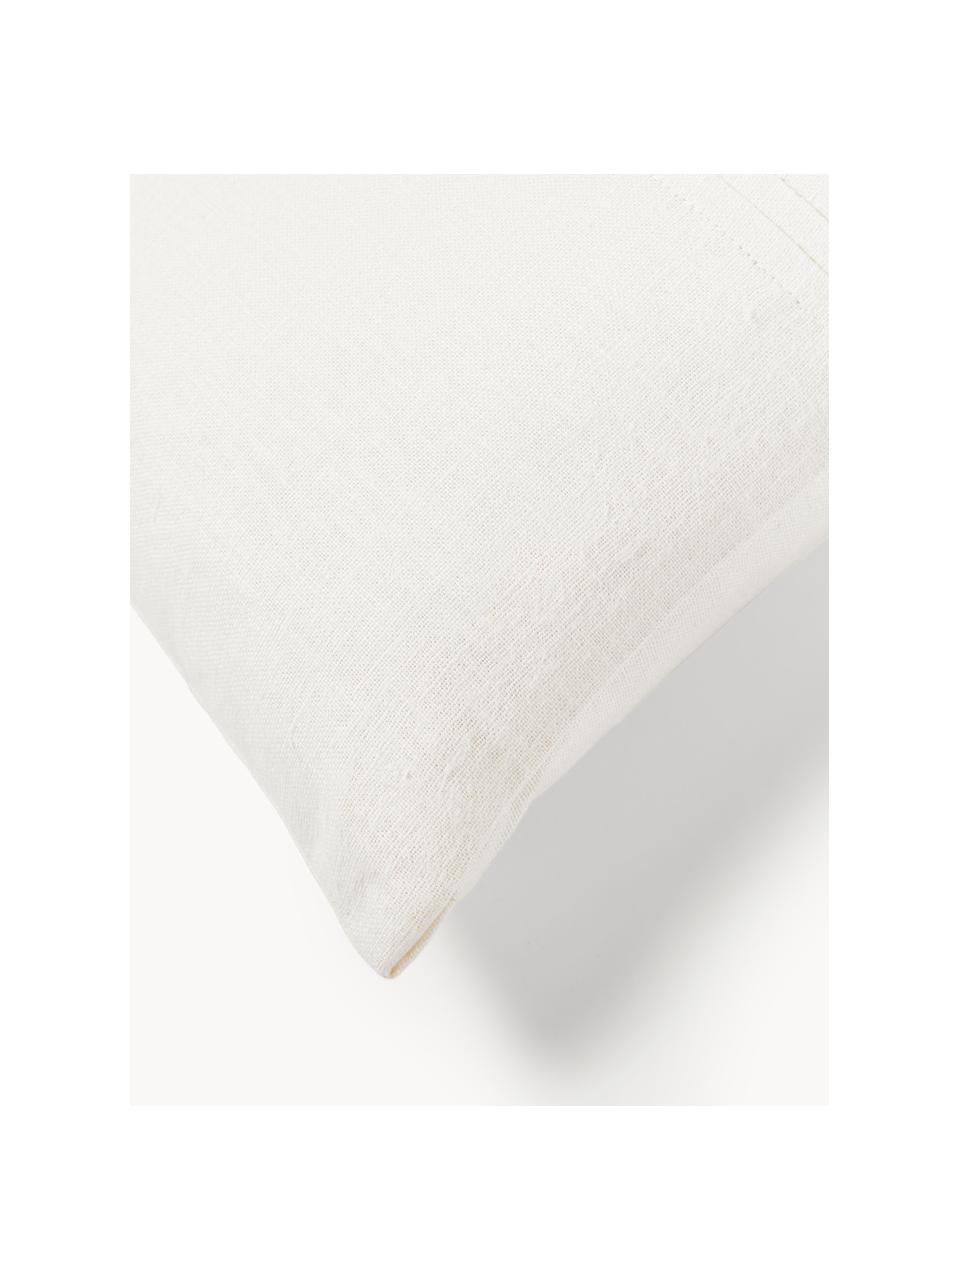 Leinen-Kissenhülle Dalia mit Strukturmuster, 51 % Leinen, 49 % Baumwolle, Off White, B 30 x L 50 cm